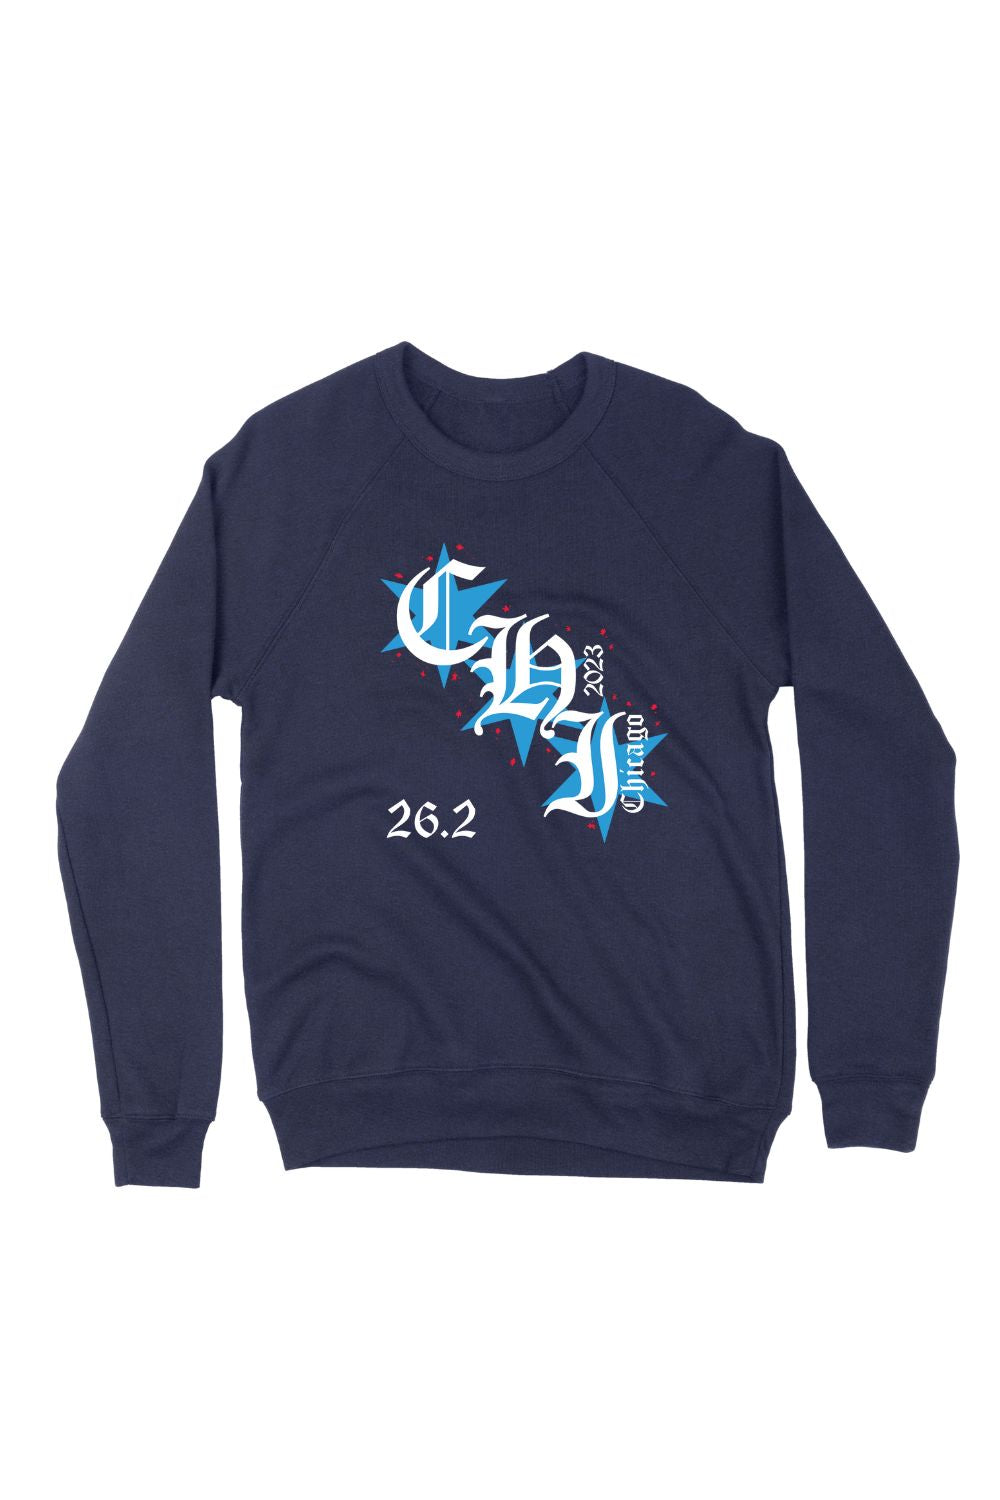 Limited Edition Chicago 26.2 Marathon Sweatshirt